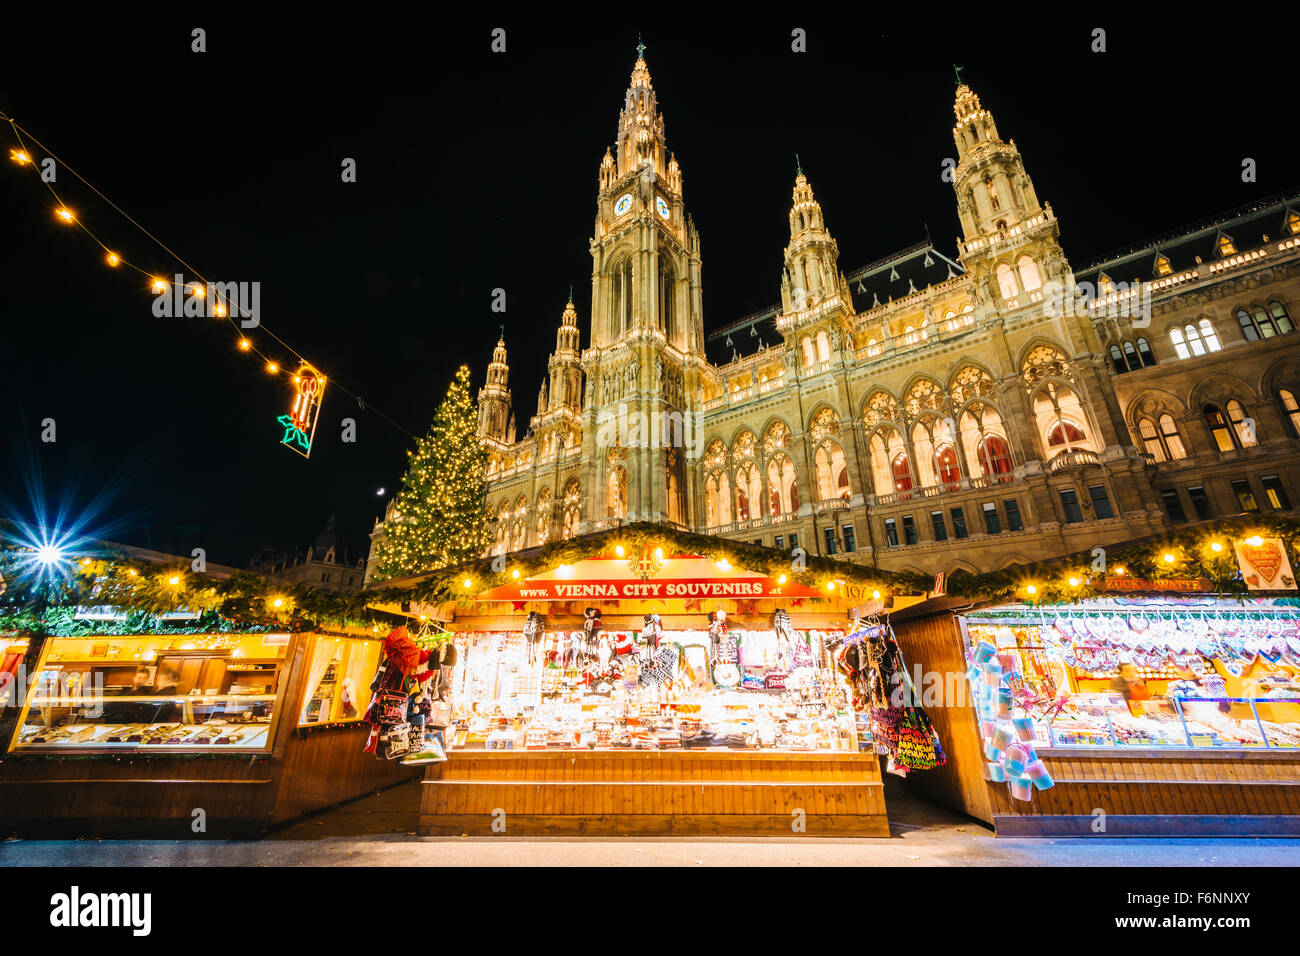 Weihnachtsmarkt und Rathaus in der Nacht, am Rathausplatz in Wien, Österreich. Stockfoto